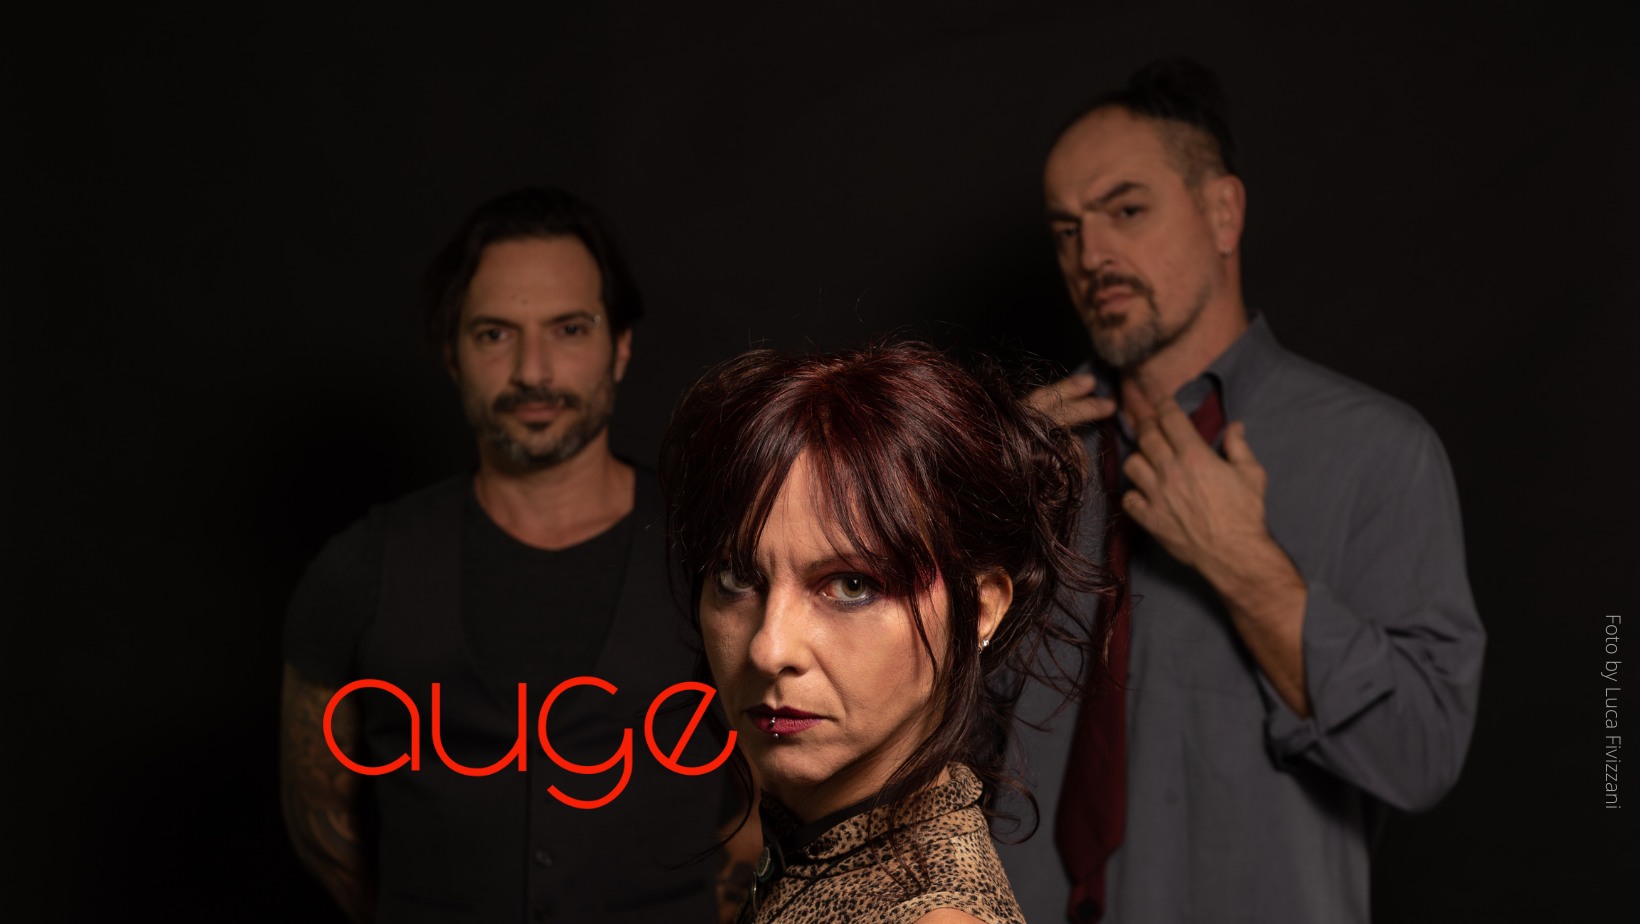 AUGE – “Tu sei me” è il primo singolo estratto da “In purgatorio”; disco su CD e LP dal 29 aprile 2022